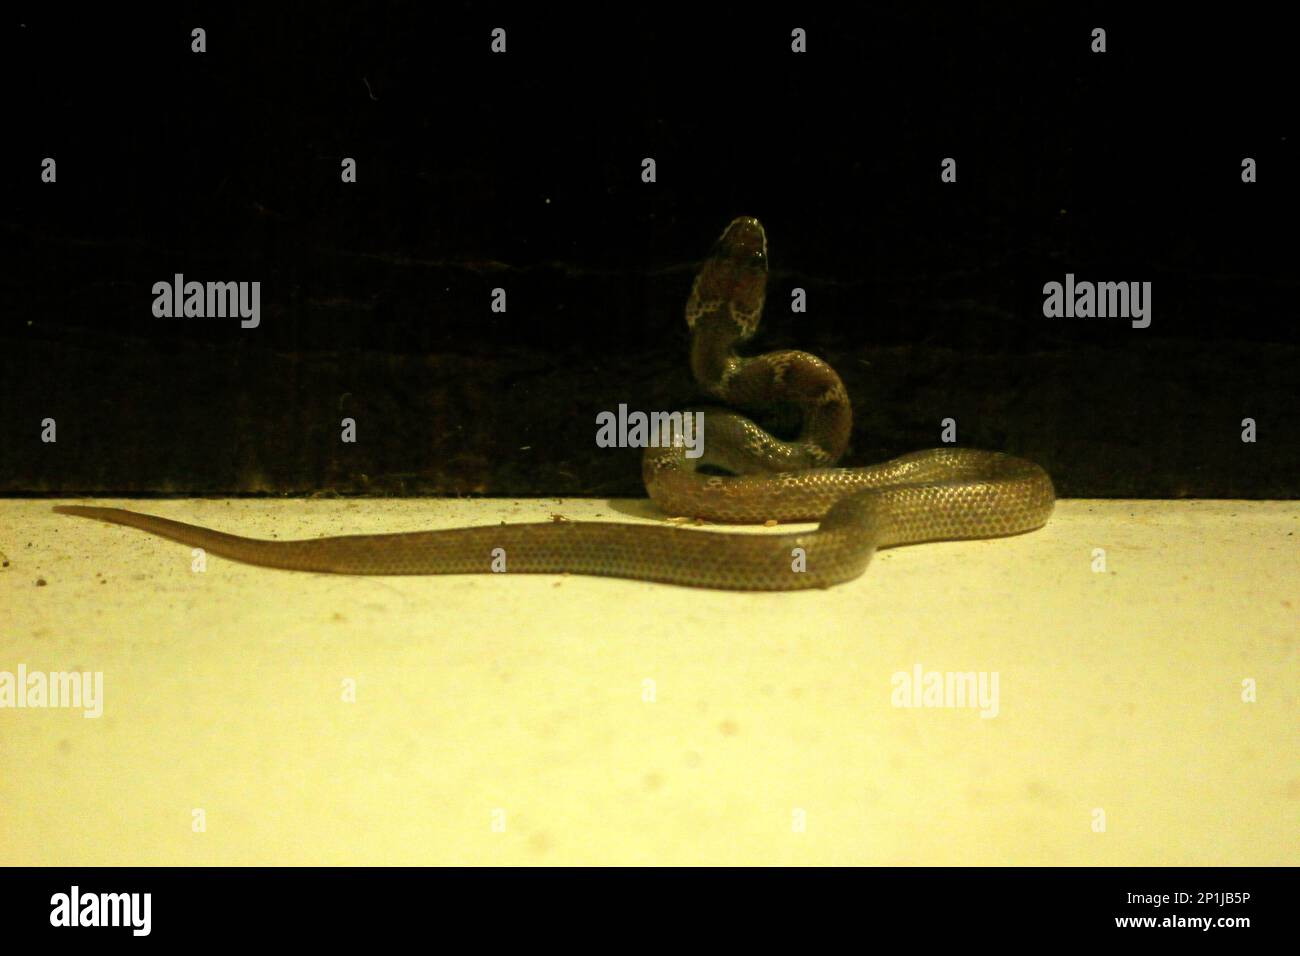 Lycodon aulicus, gemeinhin als indische Wolfsschlange bekannt, ist eine Art nicht giftiger Schlangen, die in Südasien und Südostasien zu finden ist. Frühe Naturforscher Stockfoto